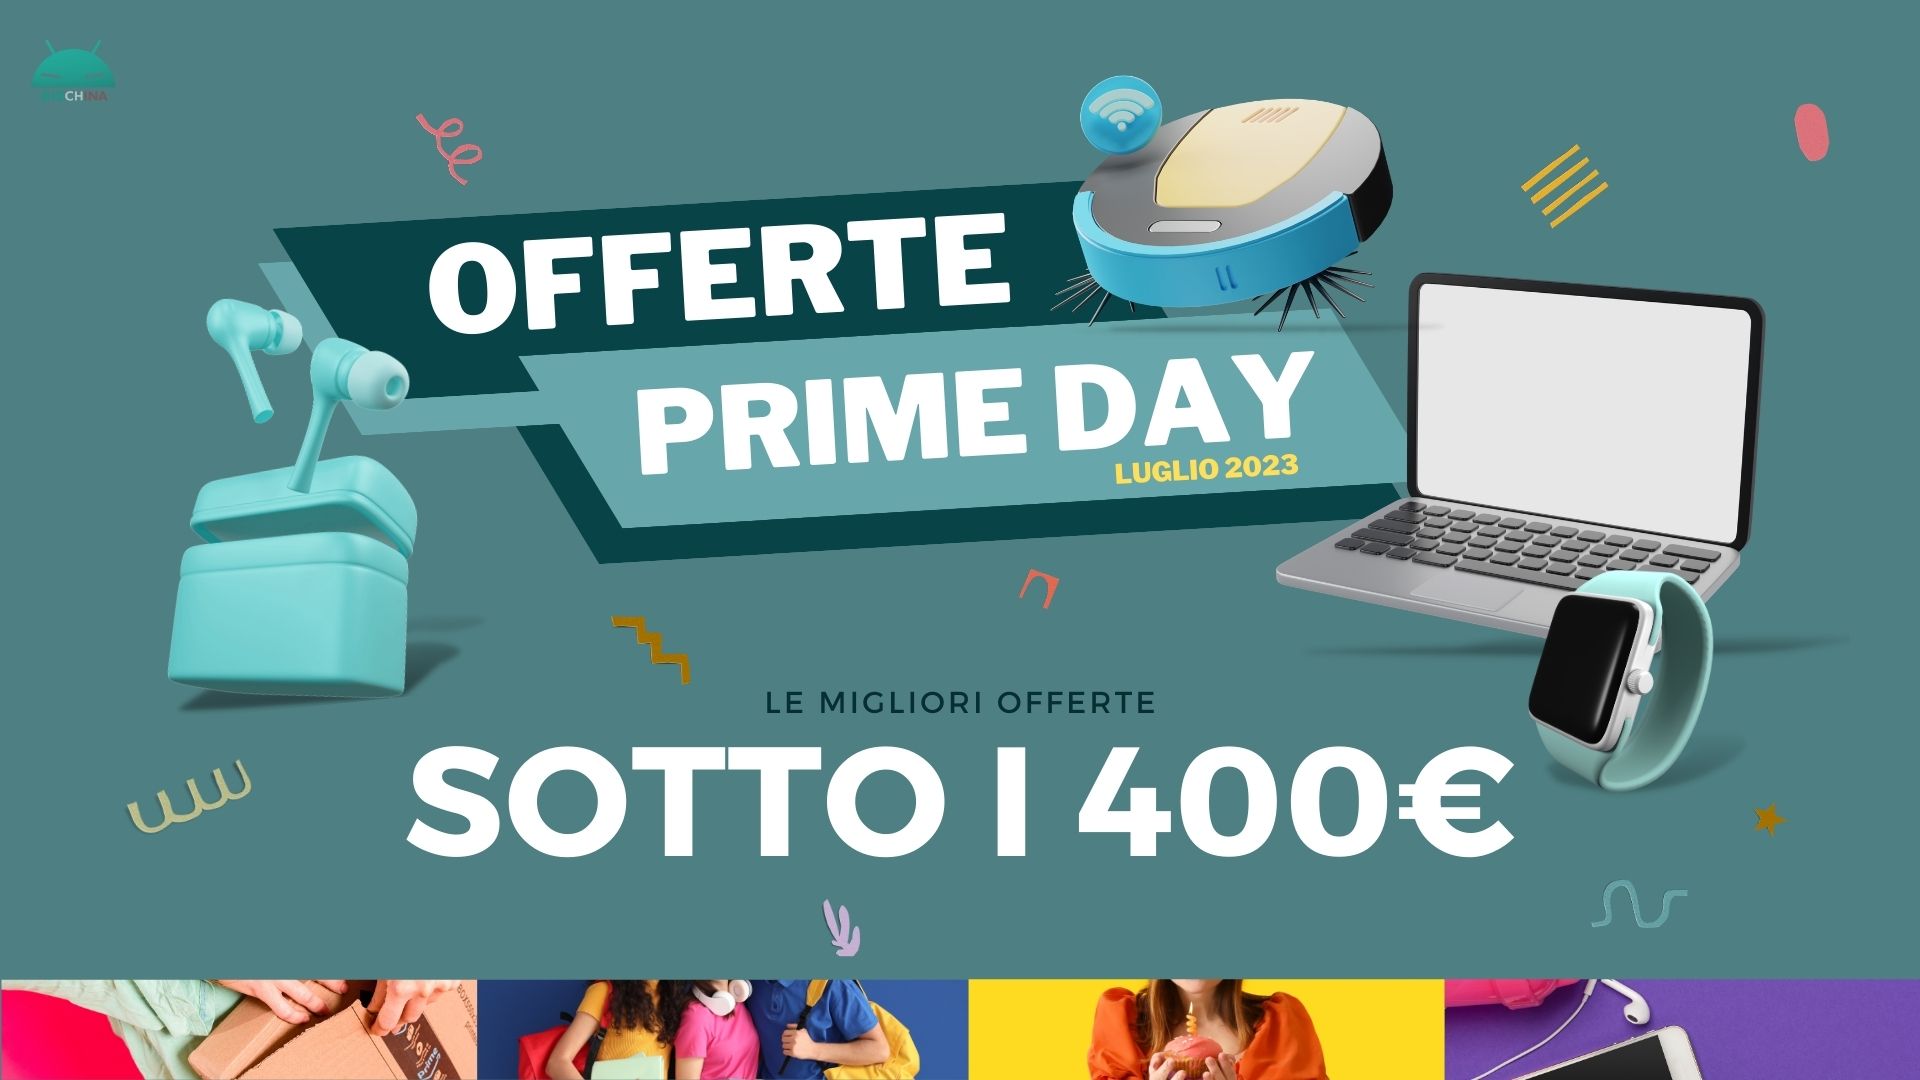 Le migliori offerte sotto i 400€ per il Prime Day 2023 